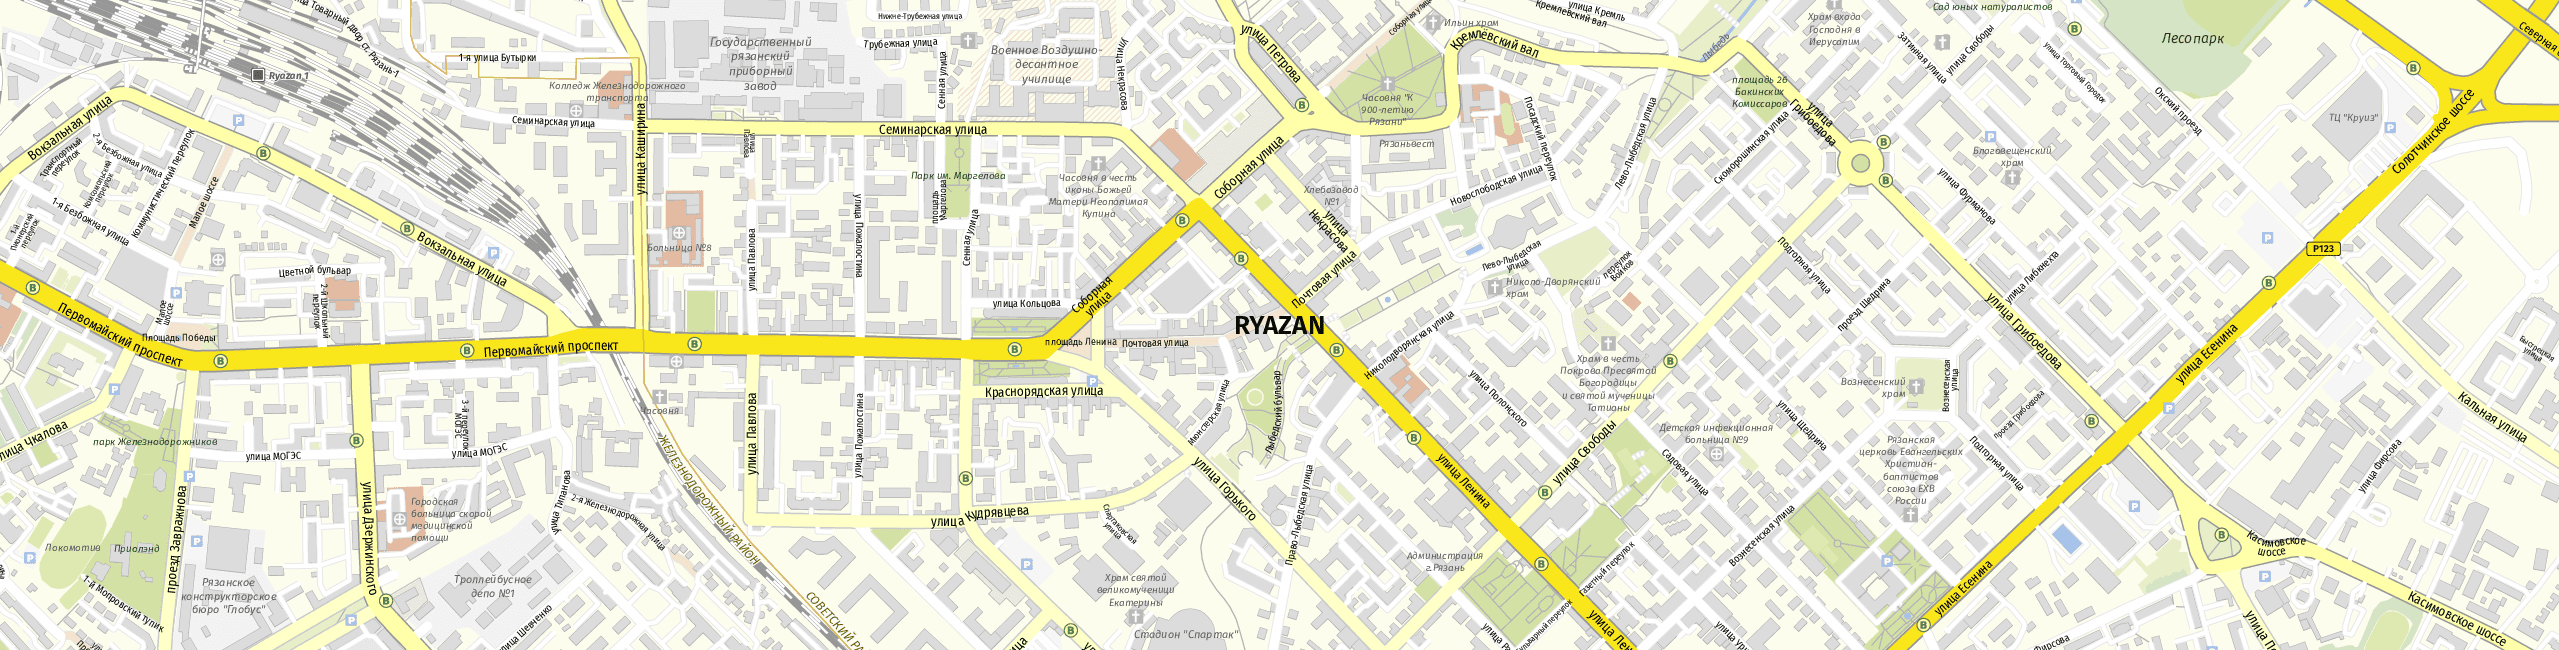 Stadtplan Ryazan zum Downloaden.